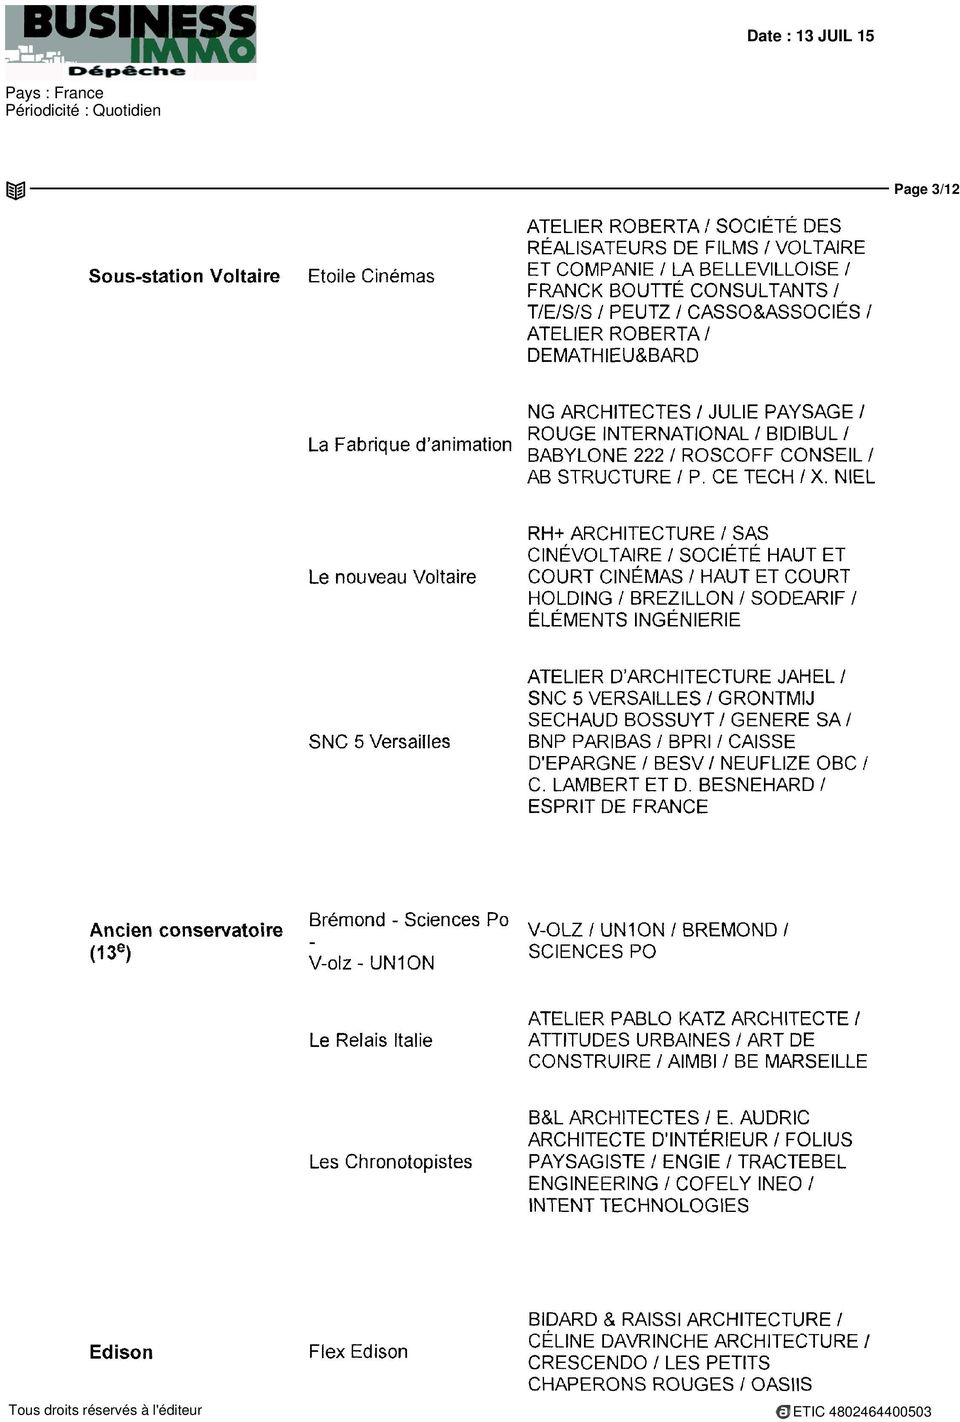 NIEL Le nouveau Voltaire RH+ ARCHITECTURE / SAS CINÉVOLTAIRE / SOCIÉTÉ HAUT ET COURT CINÉMAS / HAUT ET COURT HOLDING / BREZILLON / SODEARIF / ÉLÉMENTS INGÉNIERIE SNC 5 Versailles ATELIER